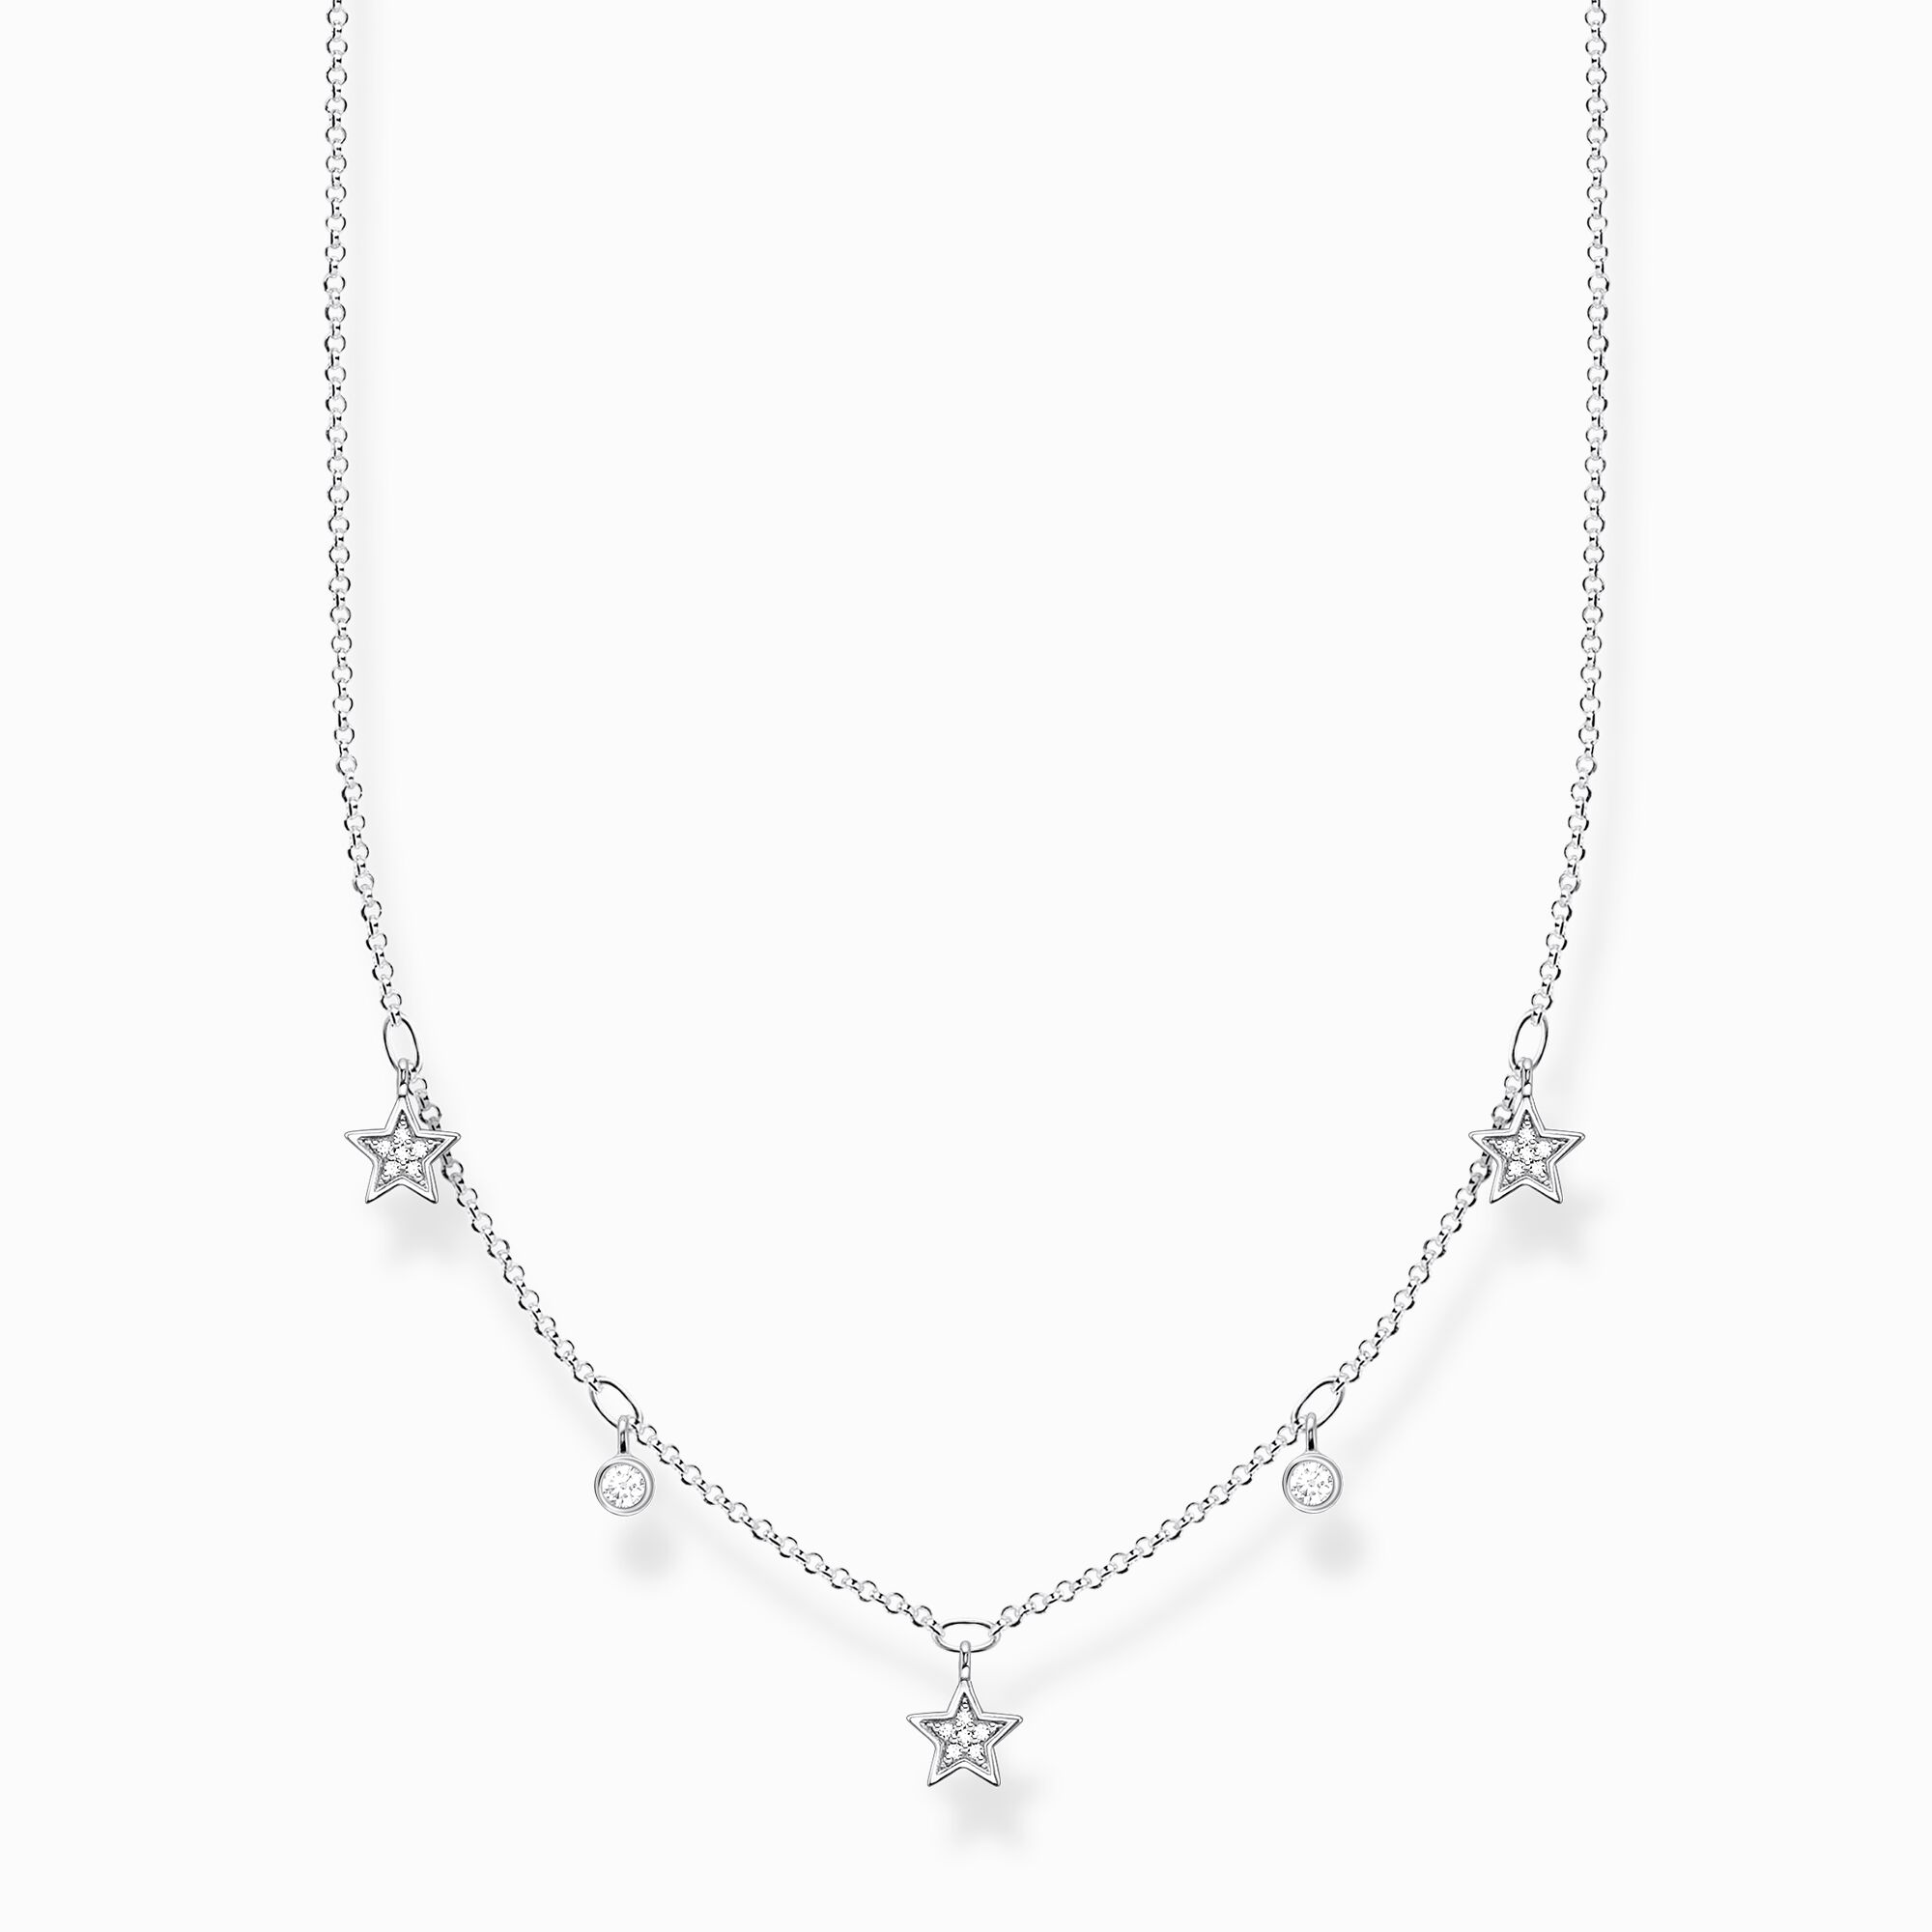 Cadena estrellas plata de la colección Charming Collection en la tienda online de THOMAS SABO